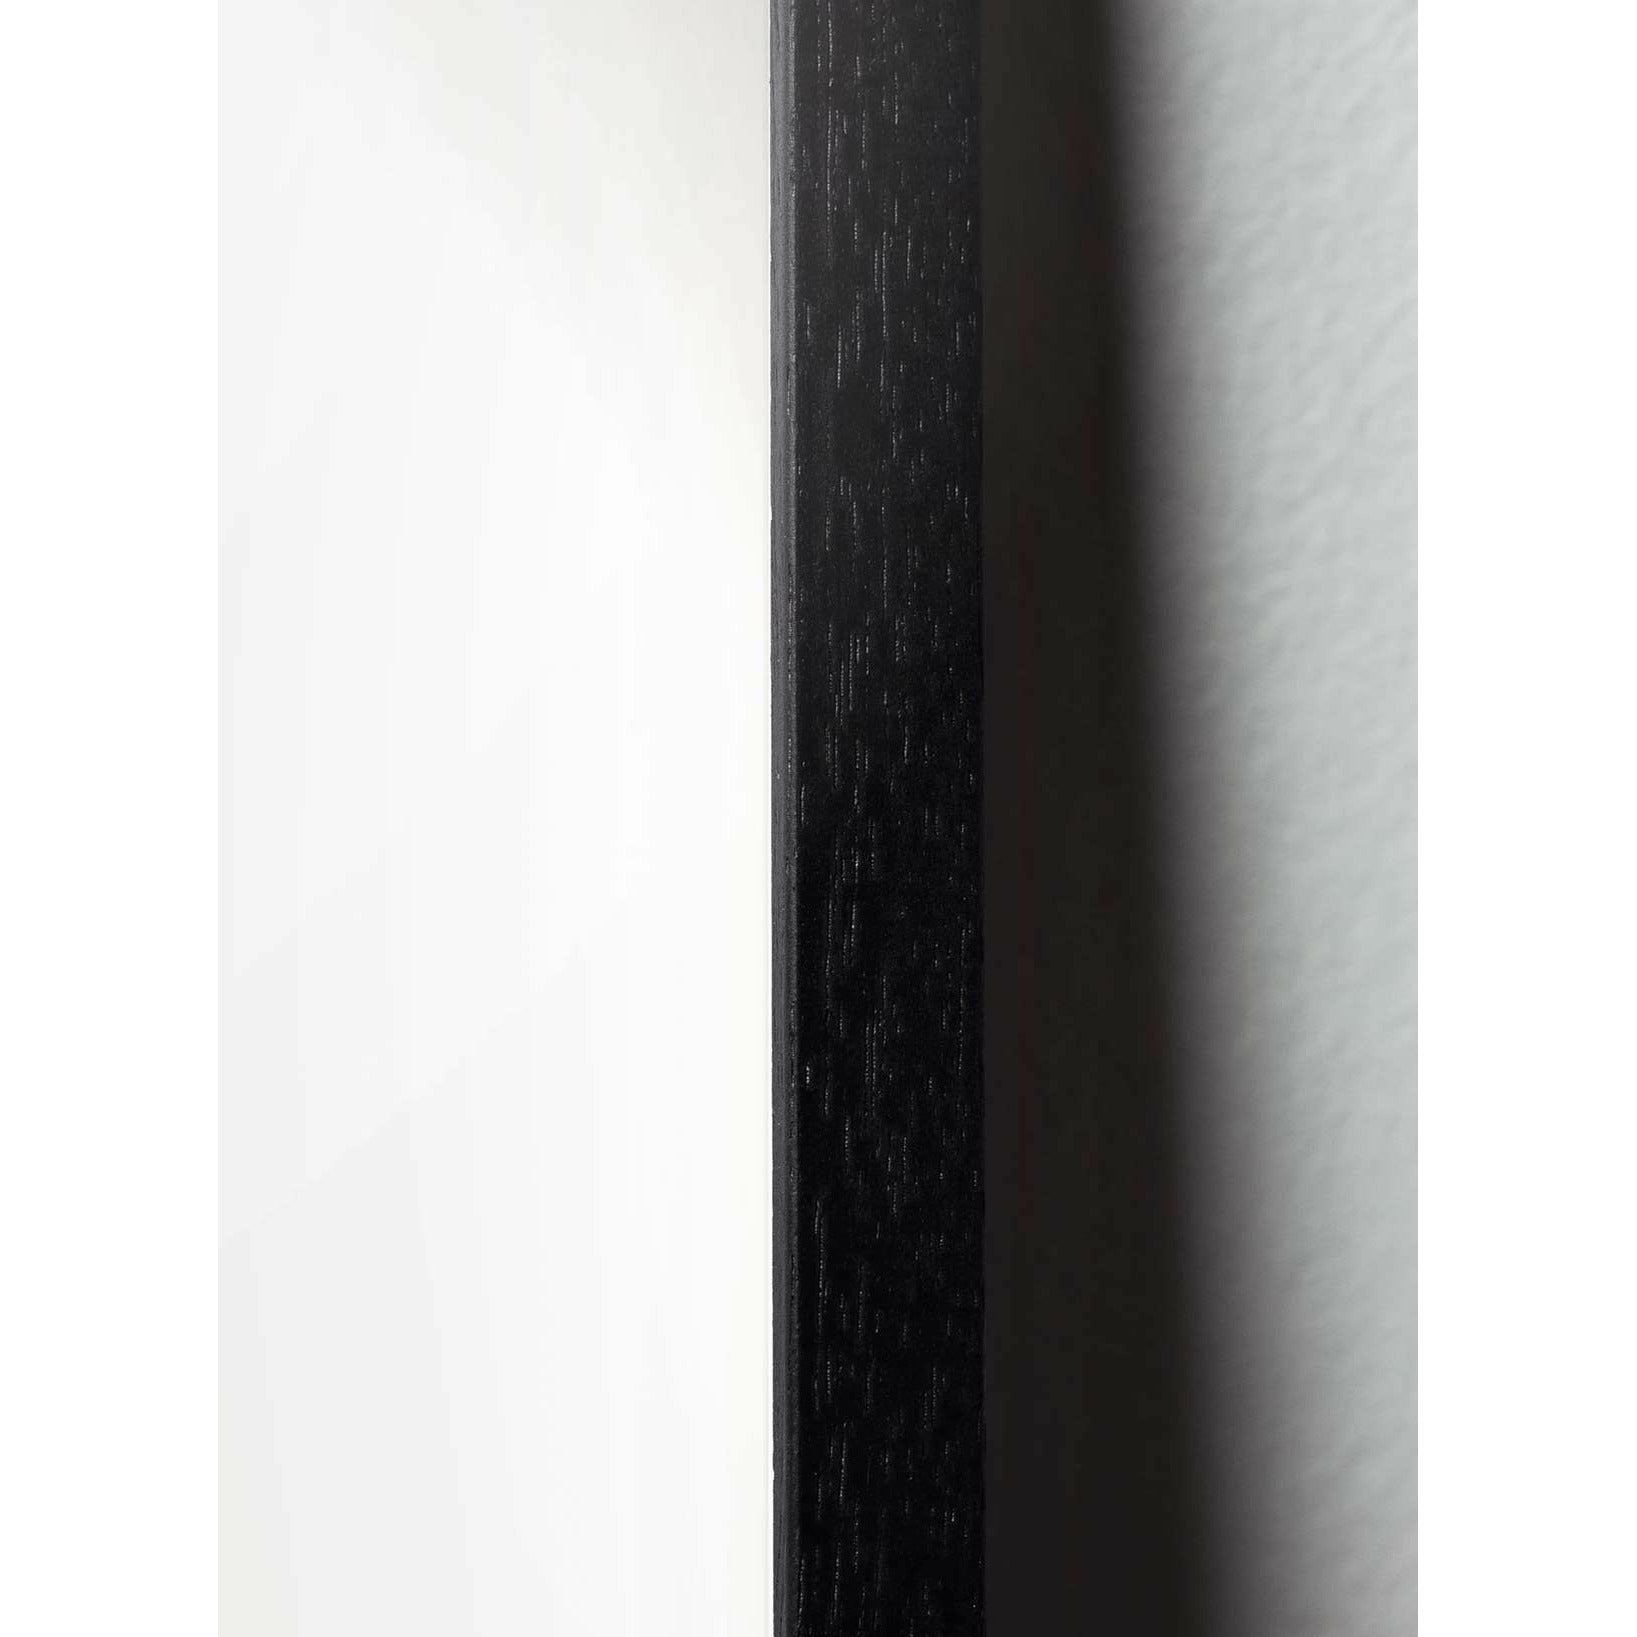 Póster clásico de pino de pino de creación, marco en madera lacada negra de 70x100 cm, fondo amarillo